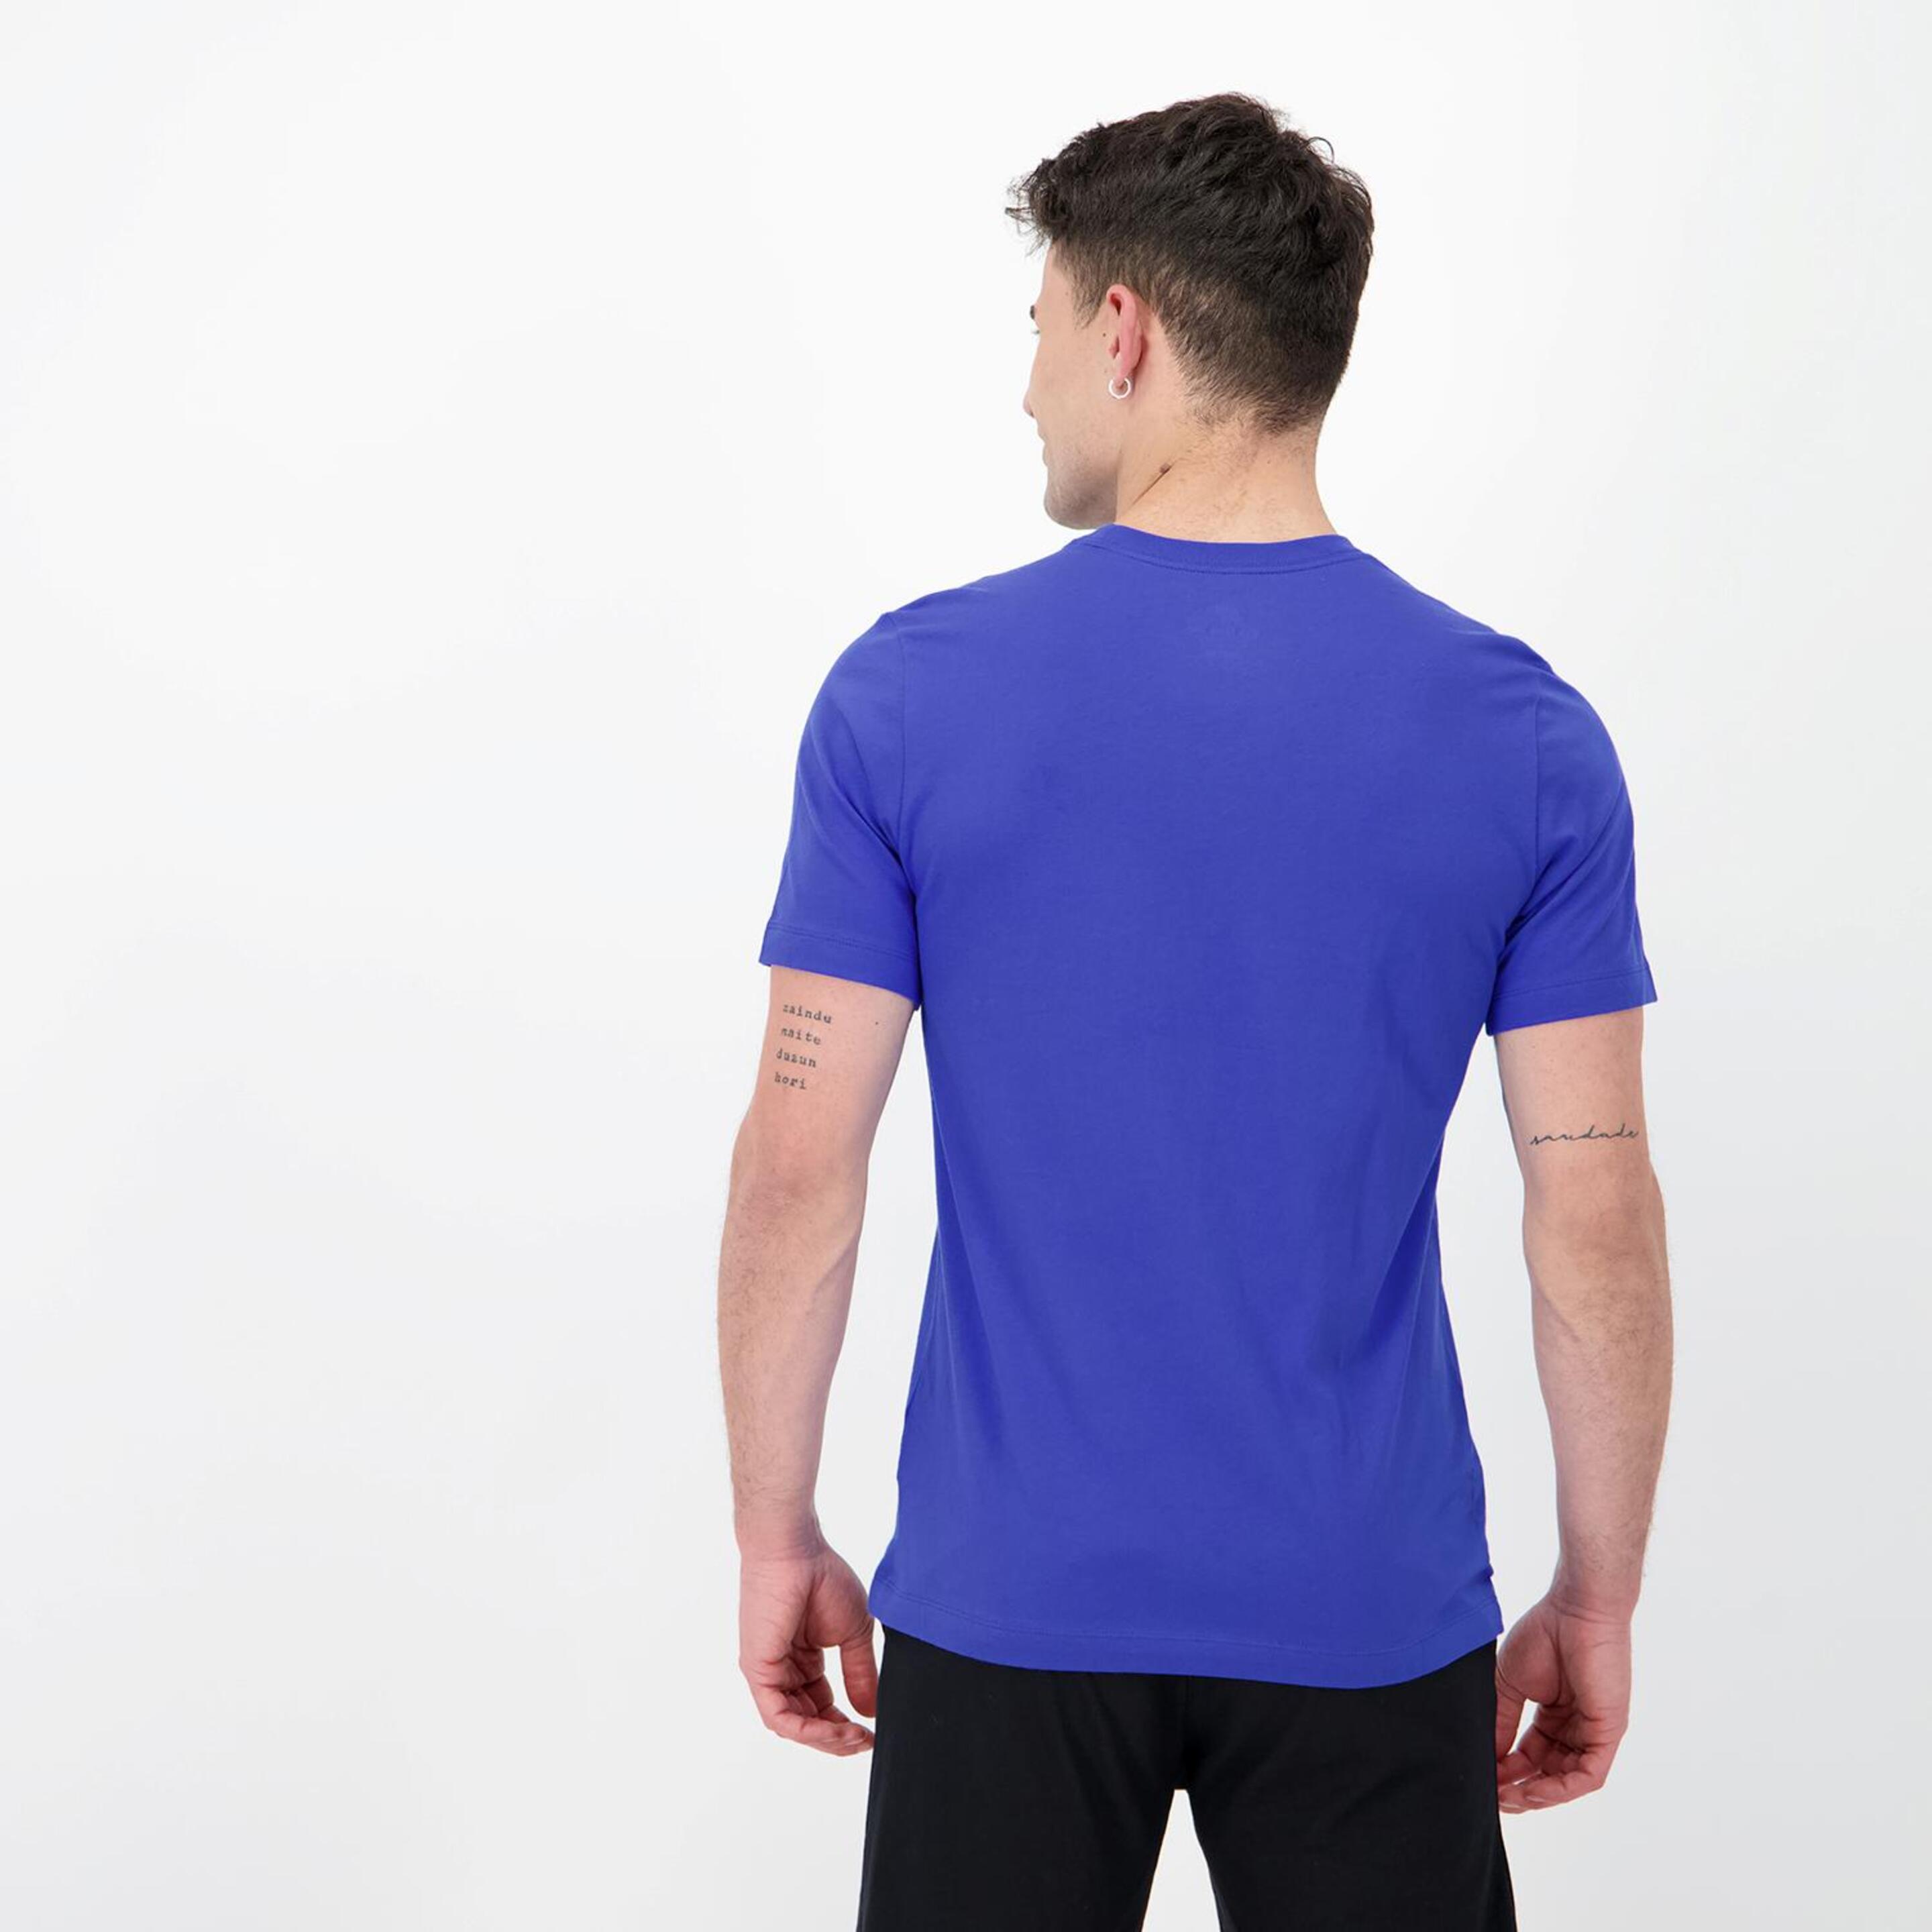 Nike Club - Azul - Camiseta Hombre  | Sprinter